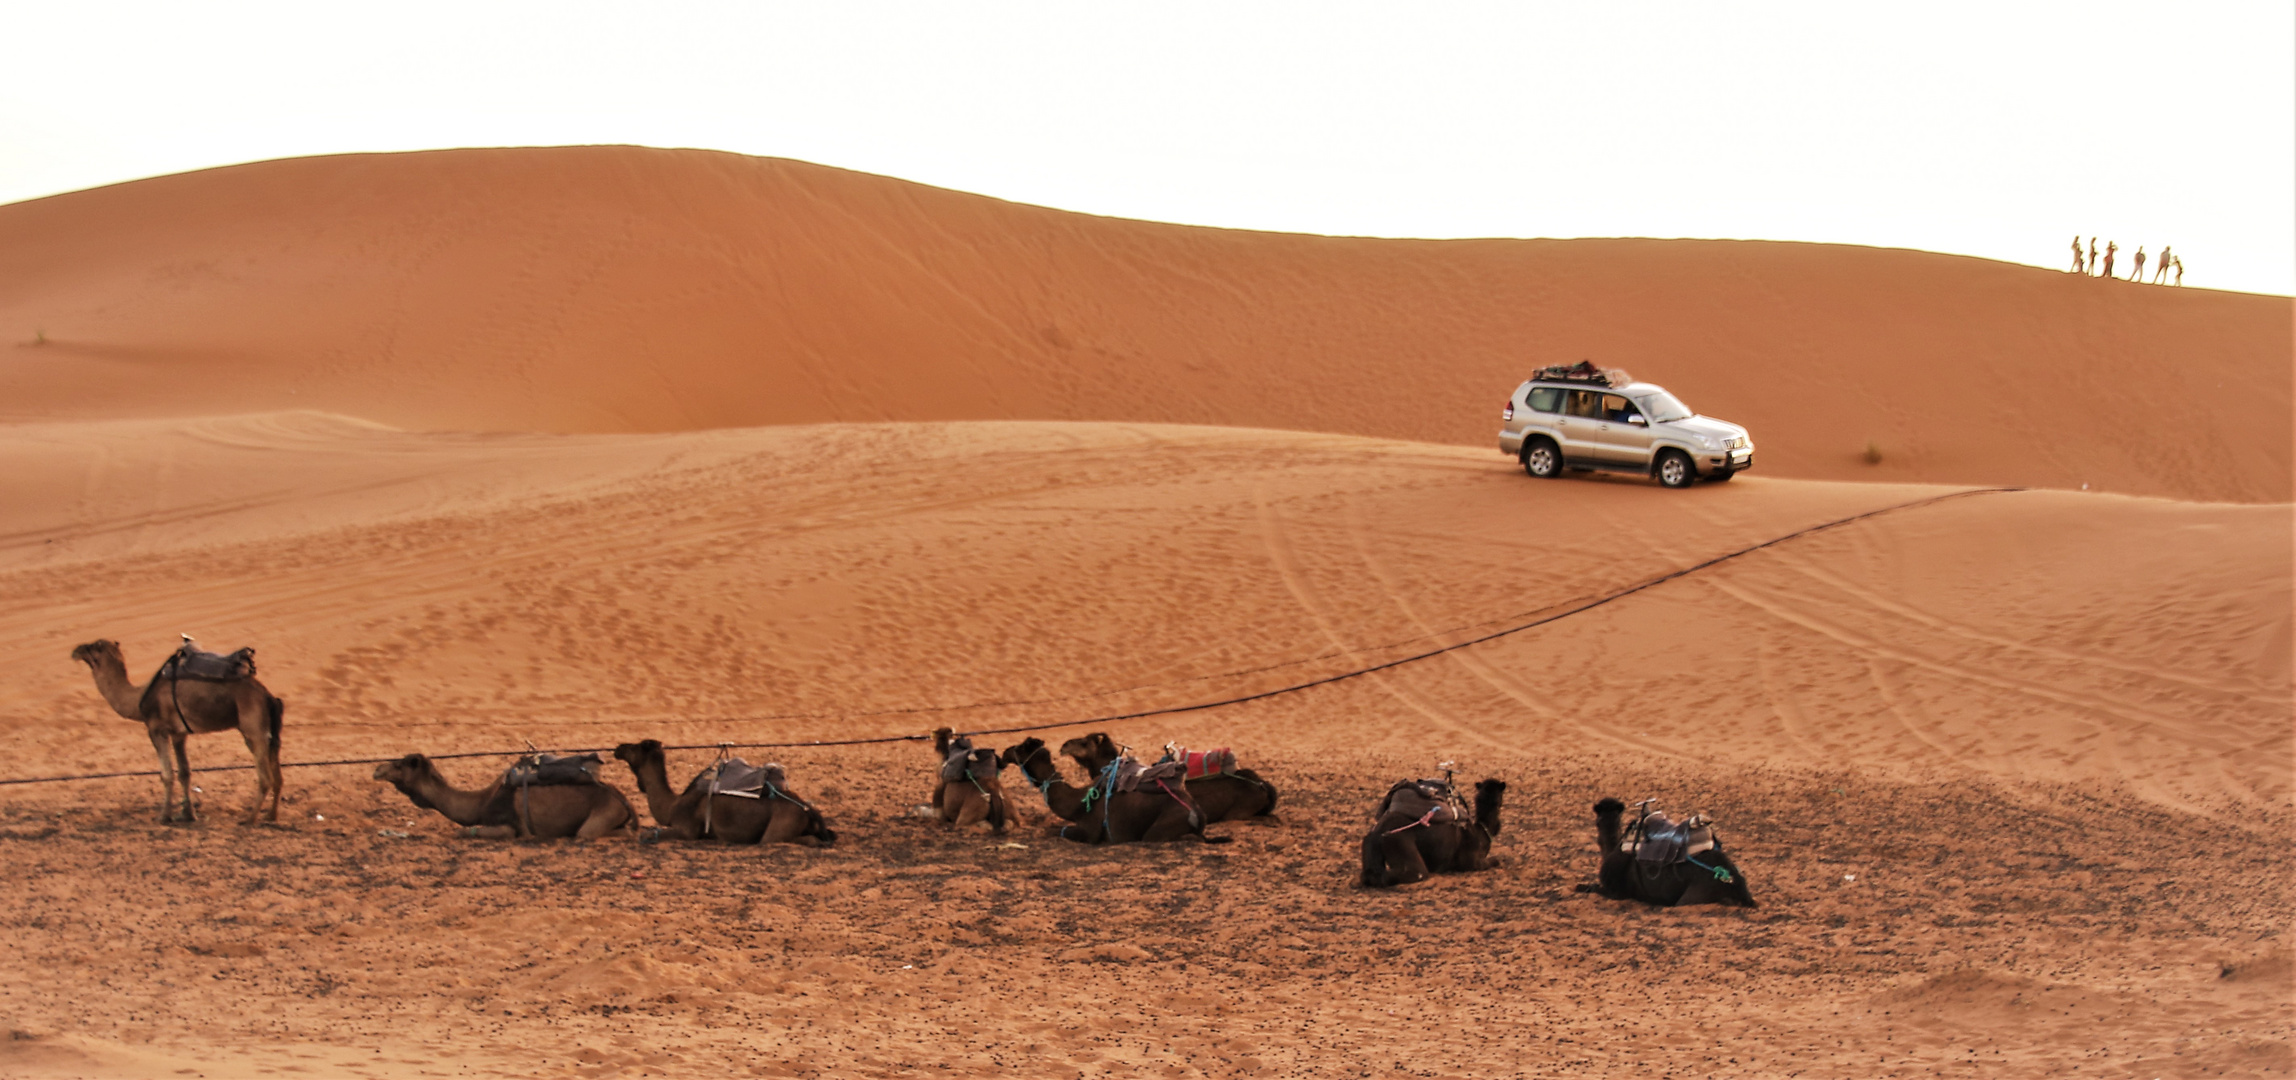 PP Wüste 8 Kamele sunset Maroc-83col